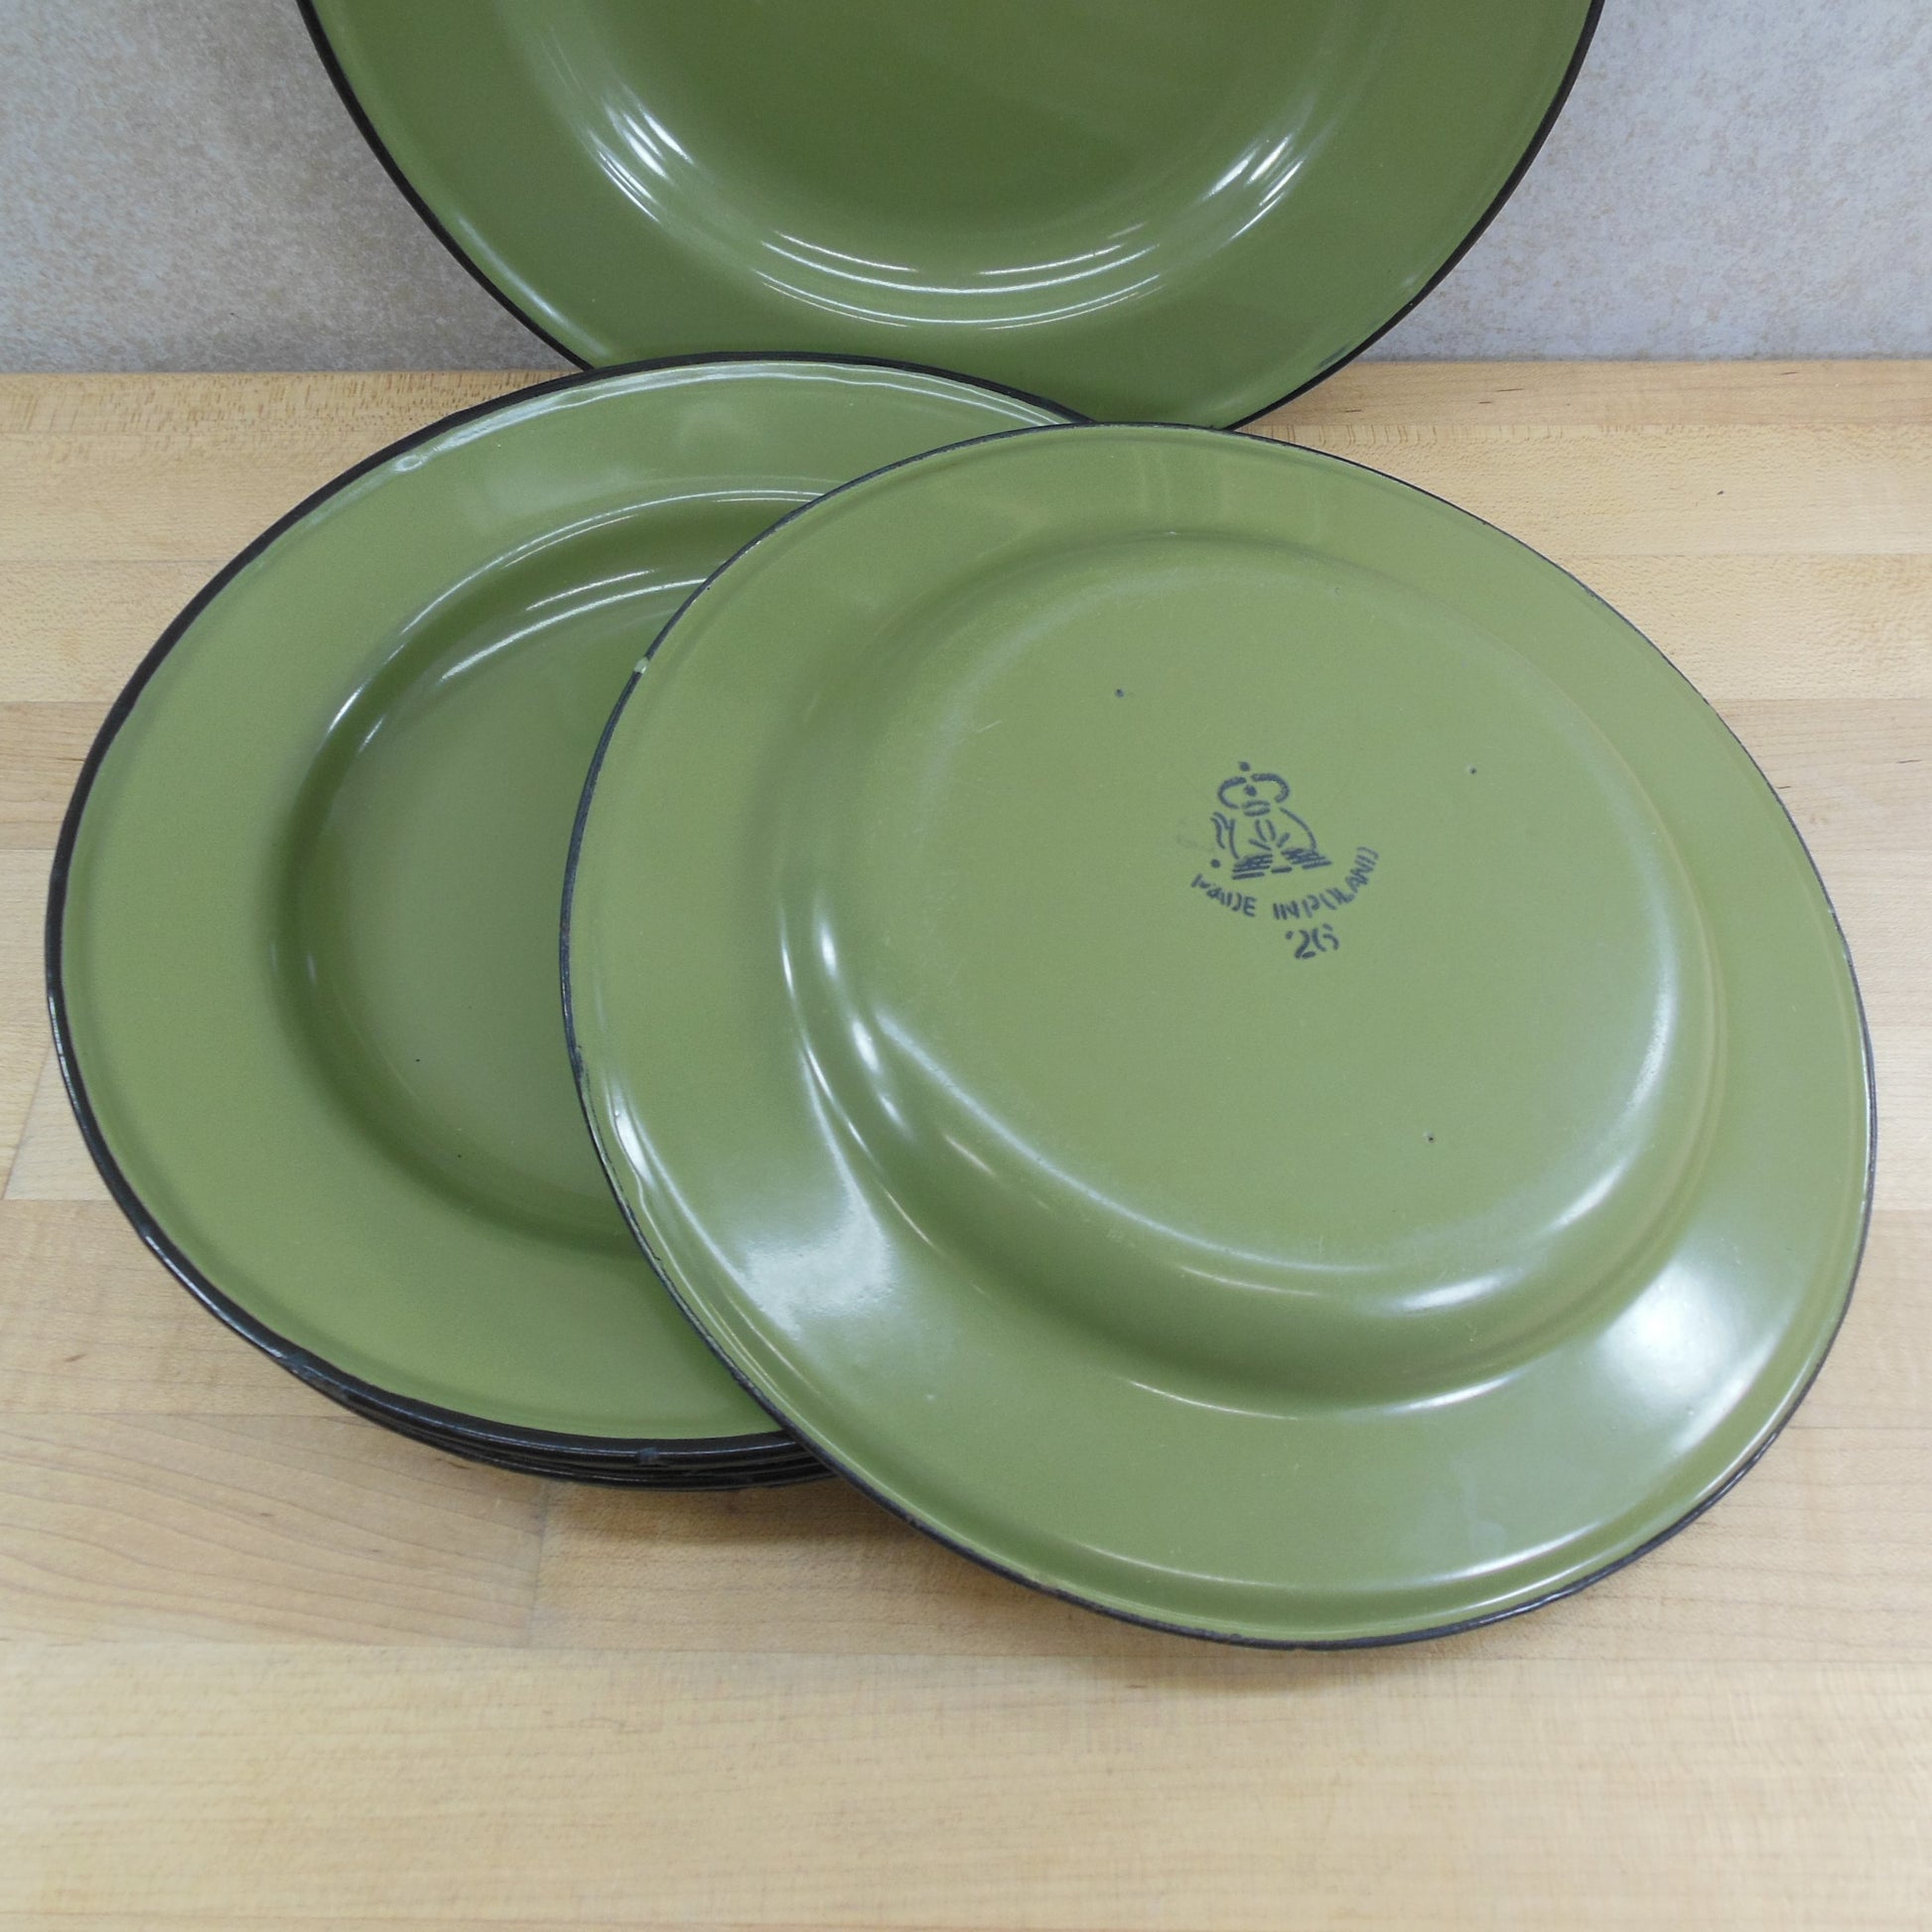 Huta Silesia Poland Avocado Green Enamelware 10" Dinner Plates - 8 Set Vintage